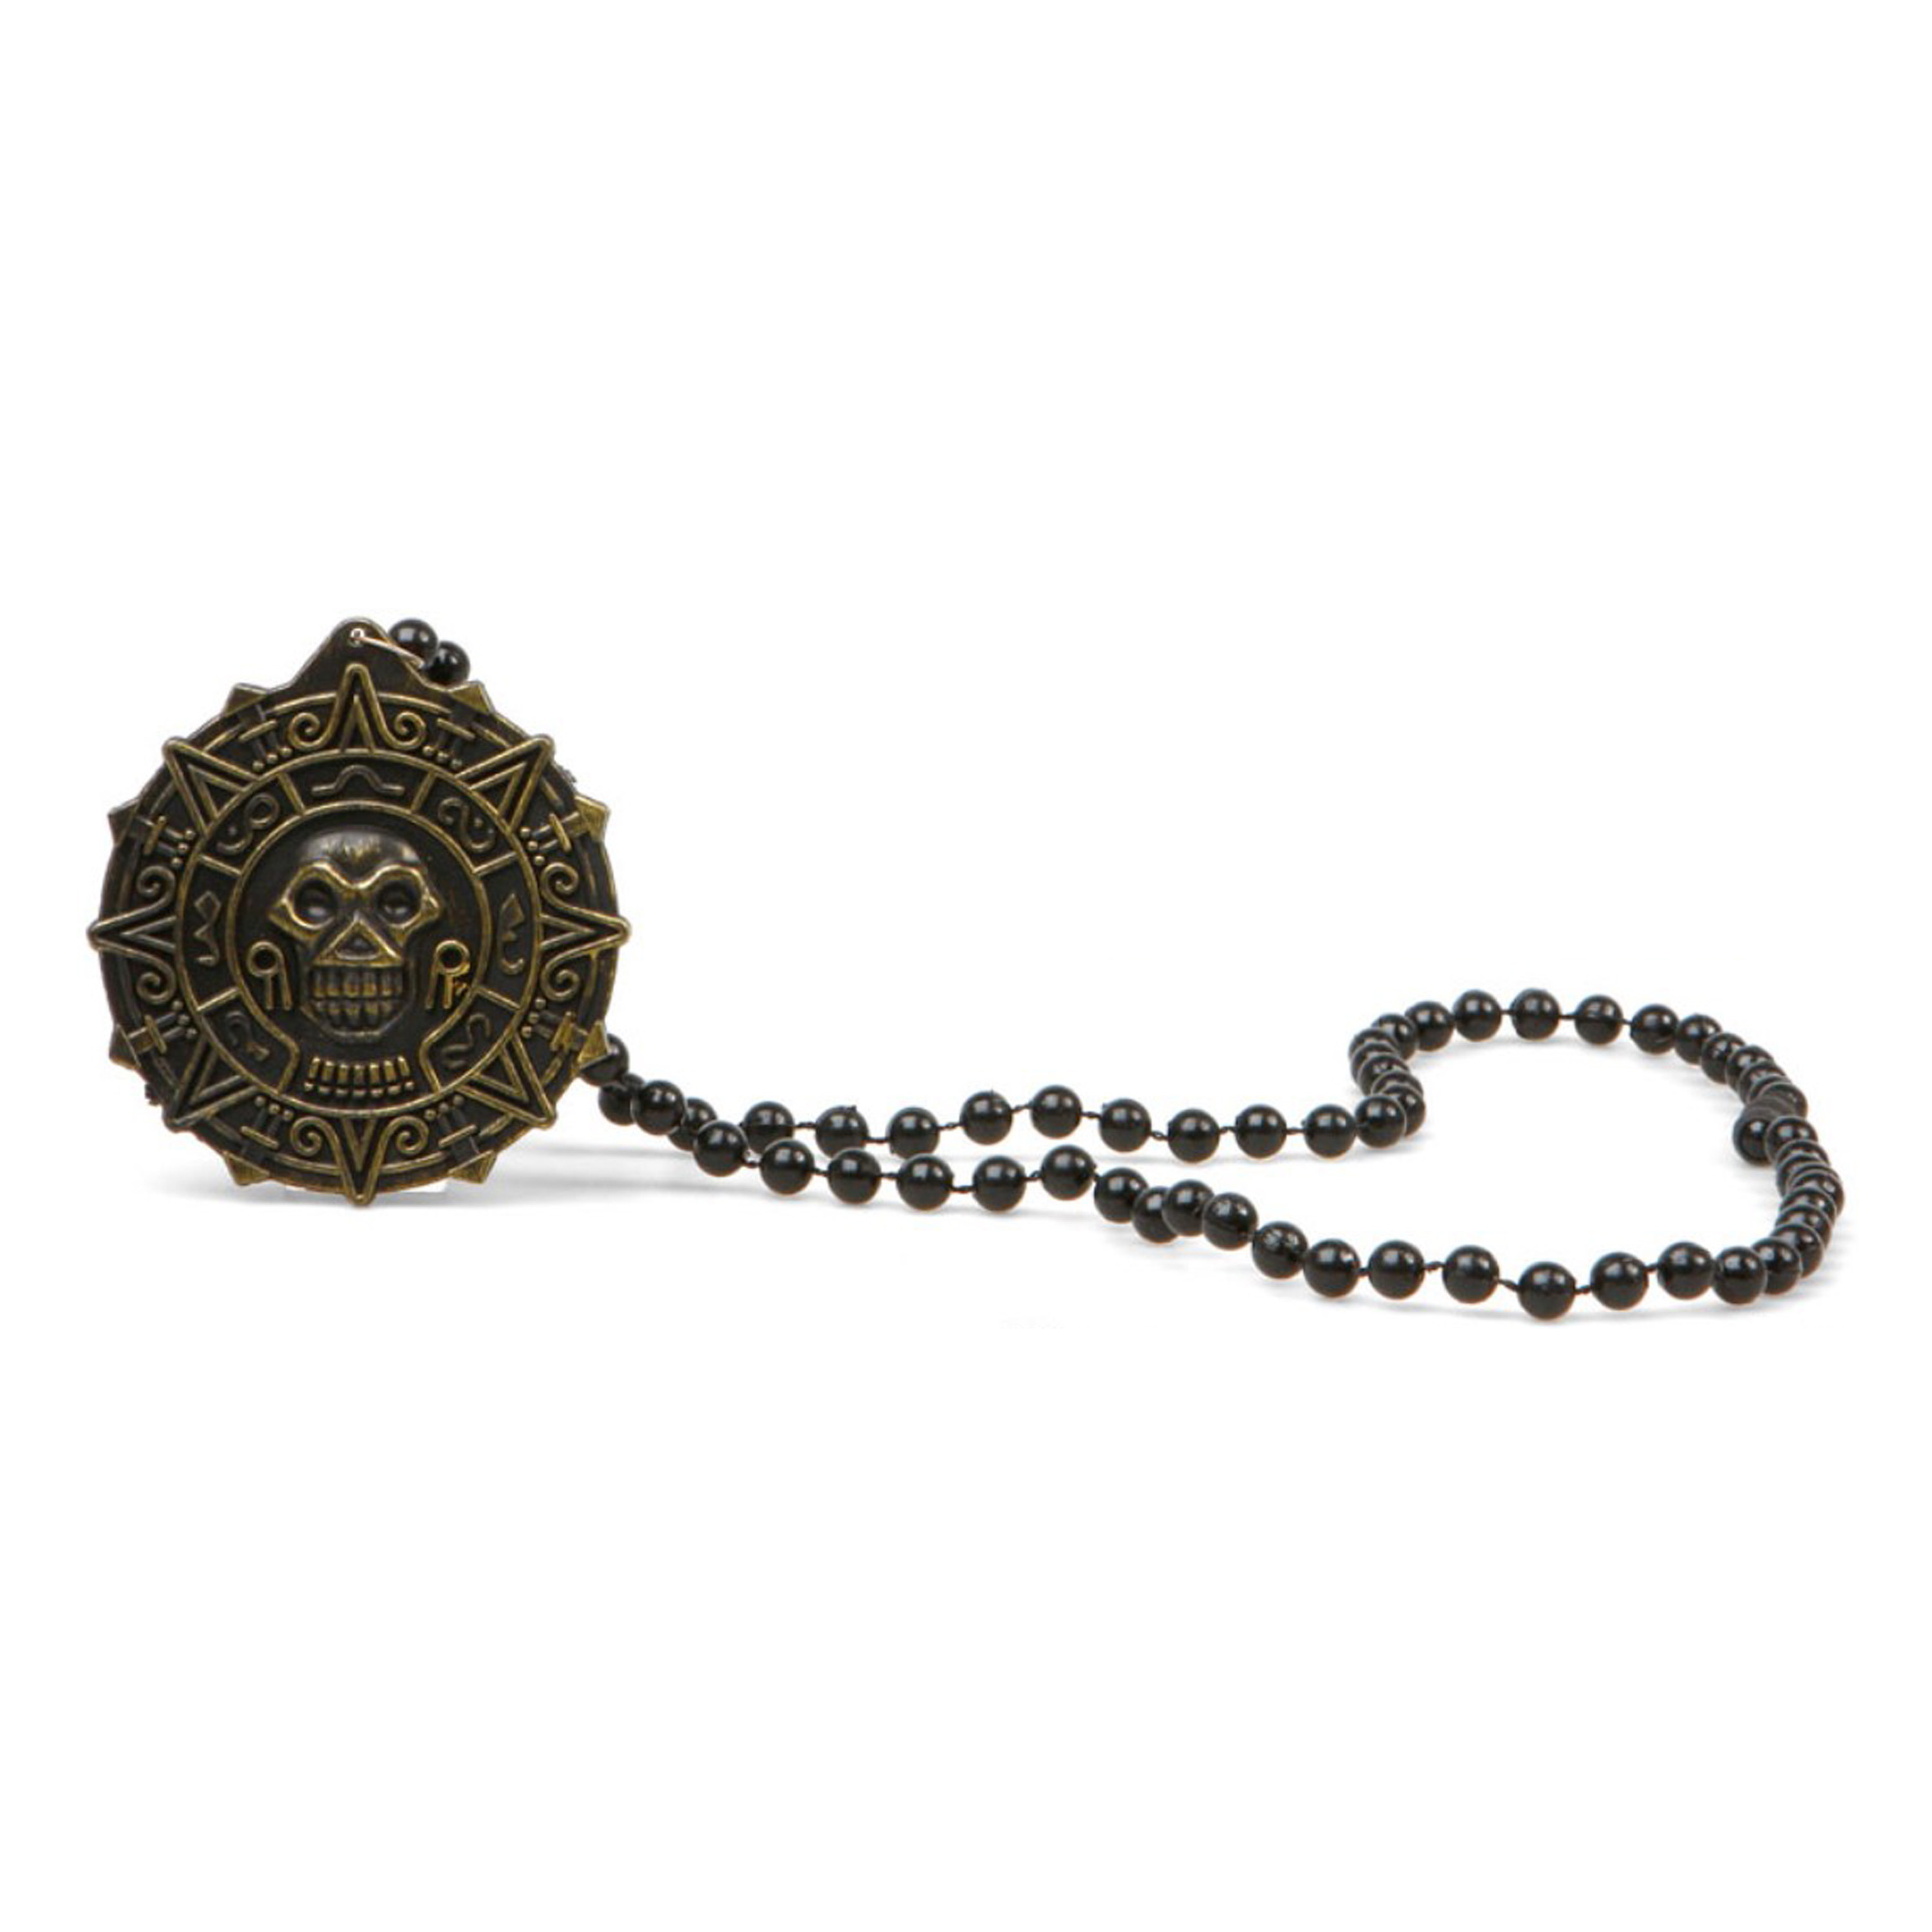 Verkleed sieraden ketting met skull - zwart - dames - kunststof - Heks/Piraat/evil Queen